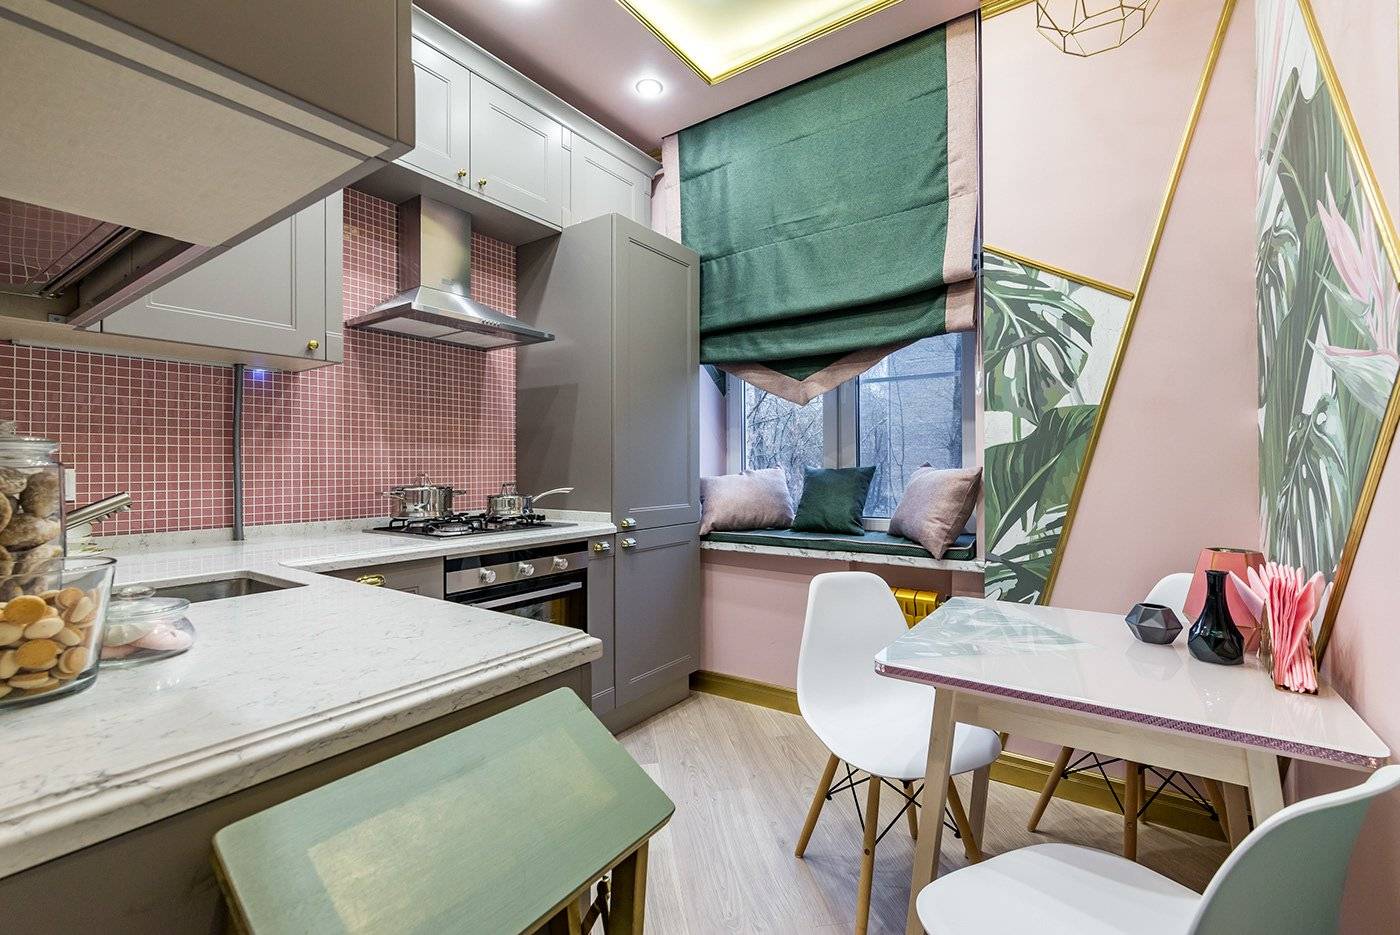 Дизайн кухни 7 кв.м (31 фото): проект планировки с холодильником в панельном доме